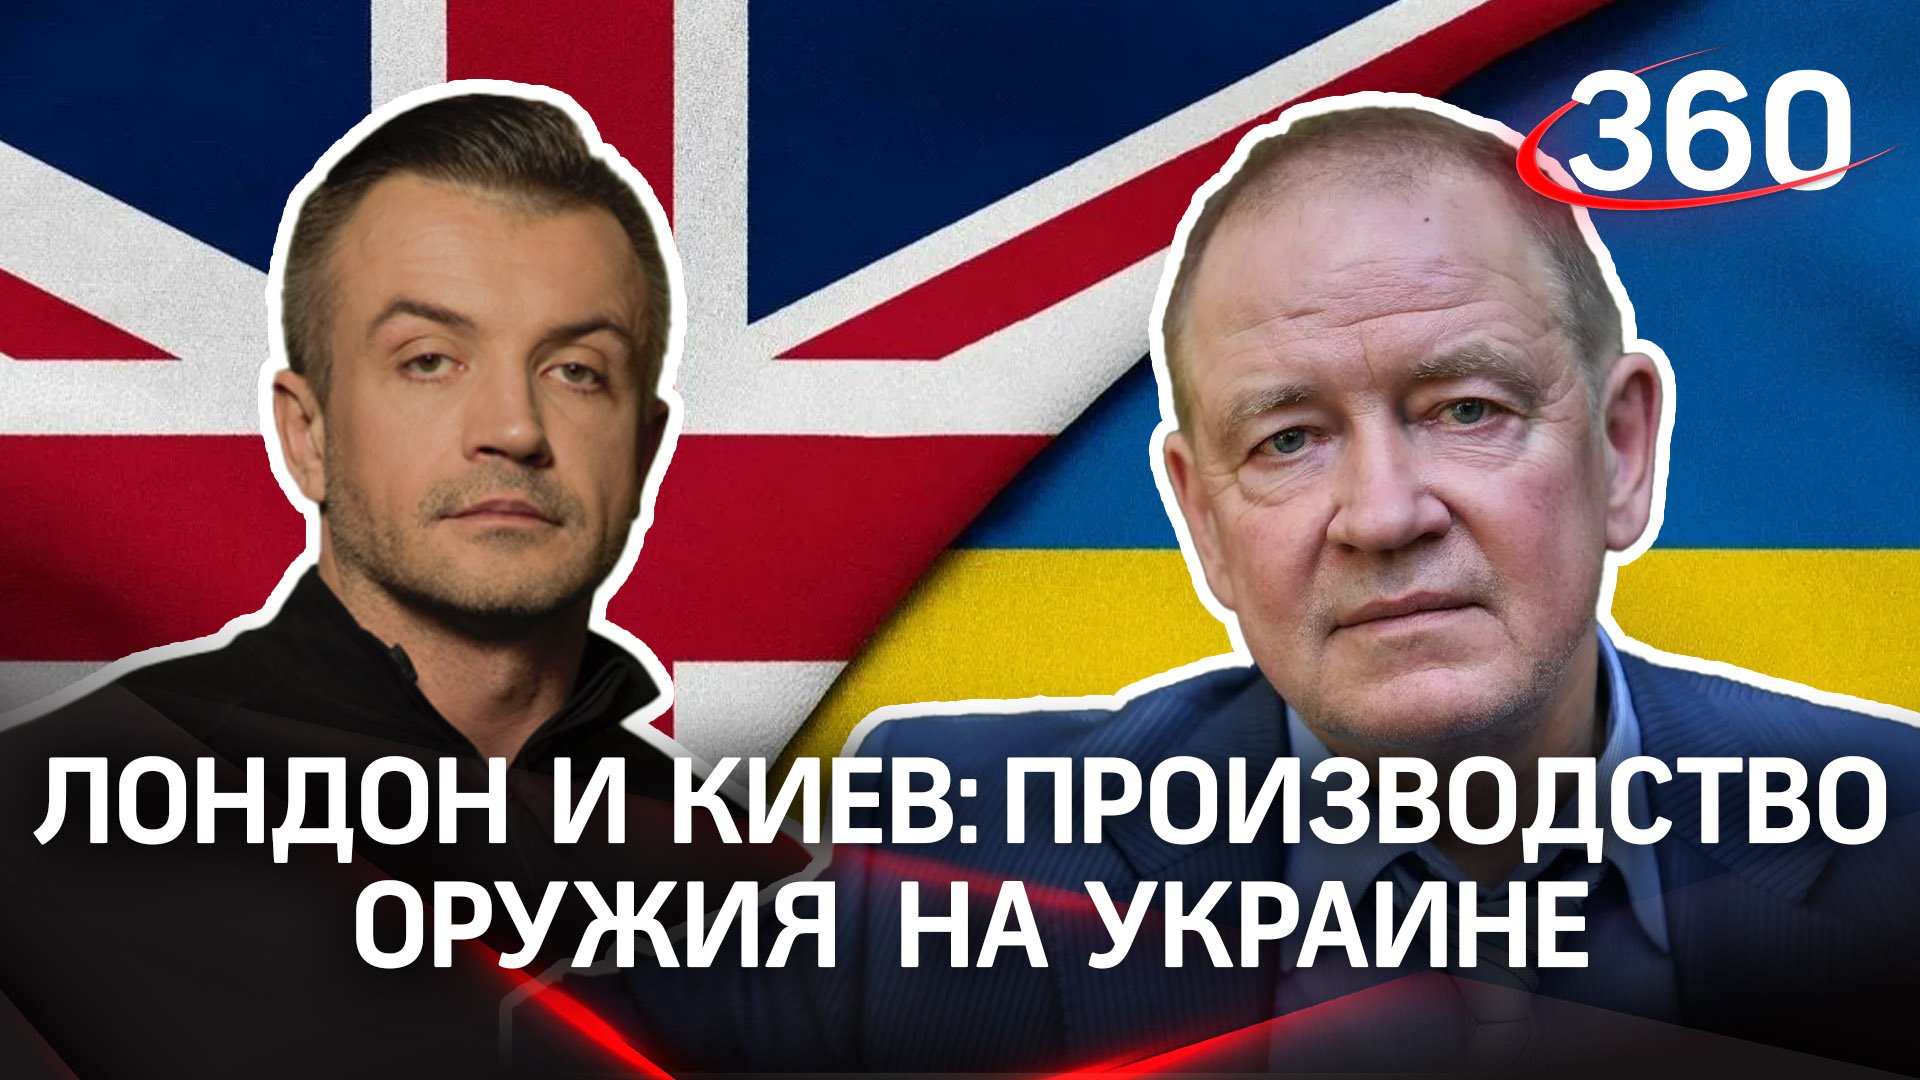 Лондон и Киев хотят создавать оружие прямо на Украине | Антон Шестаков и Сергей Станкевич